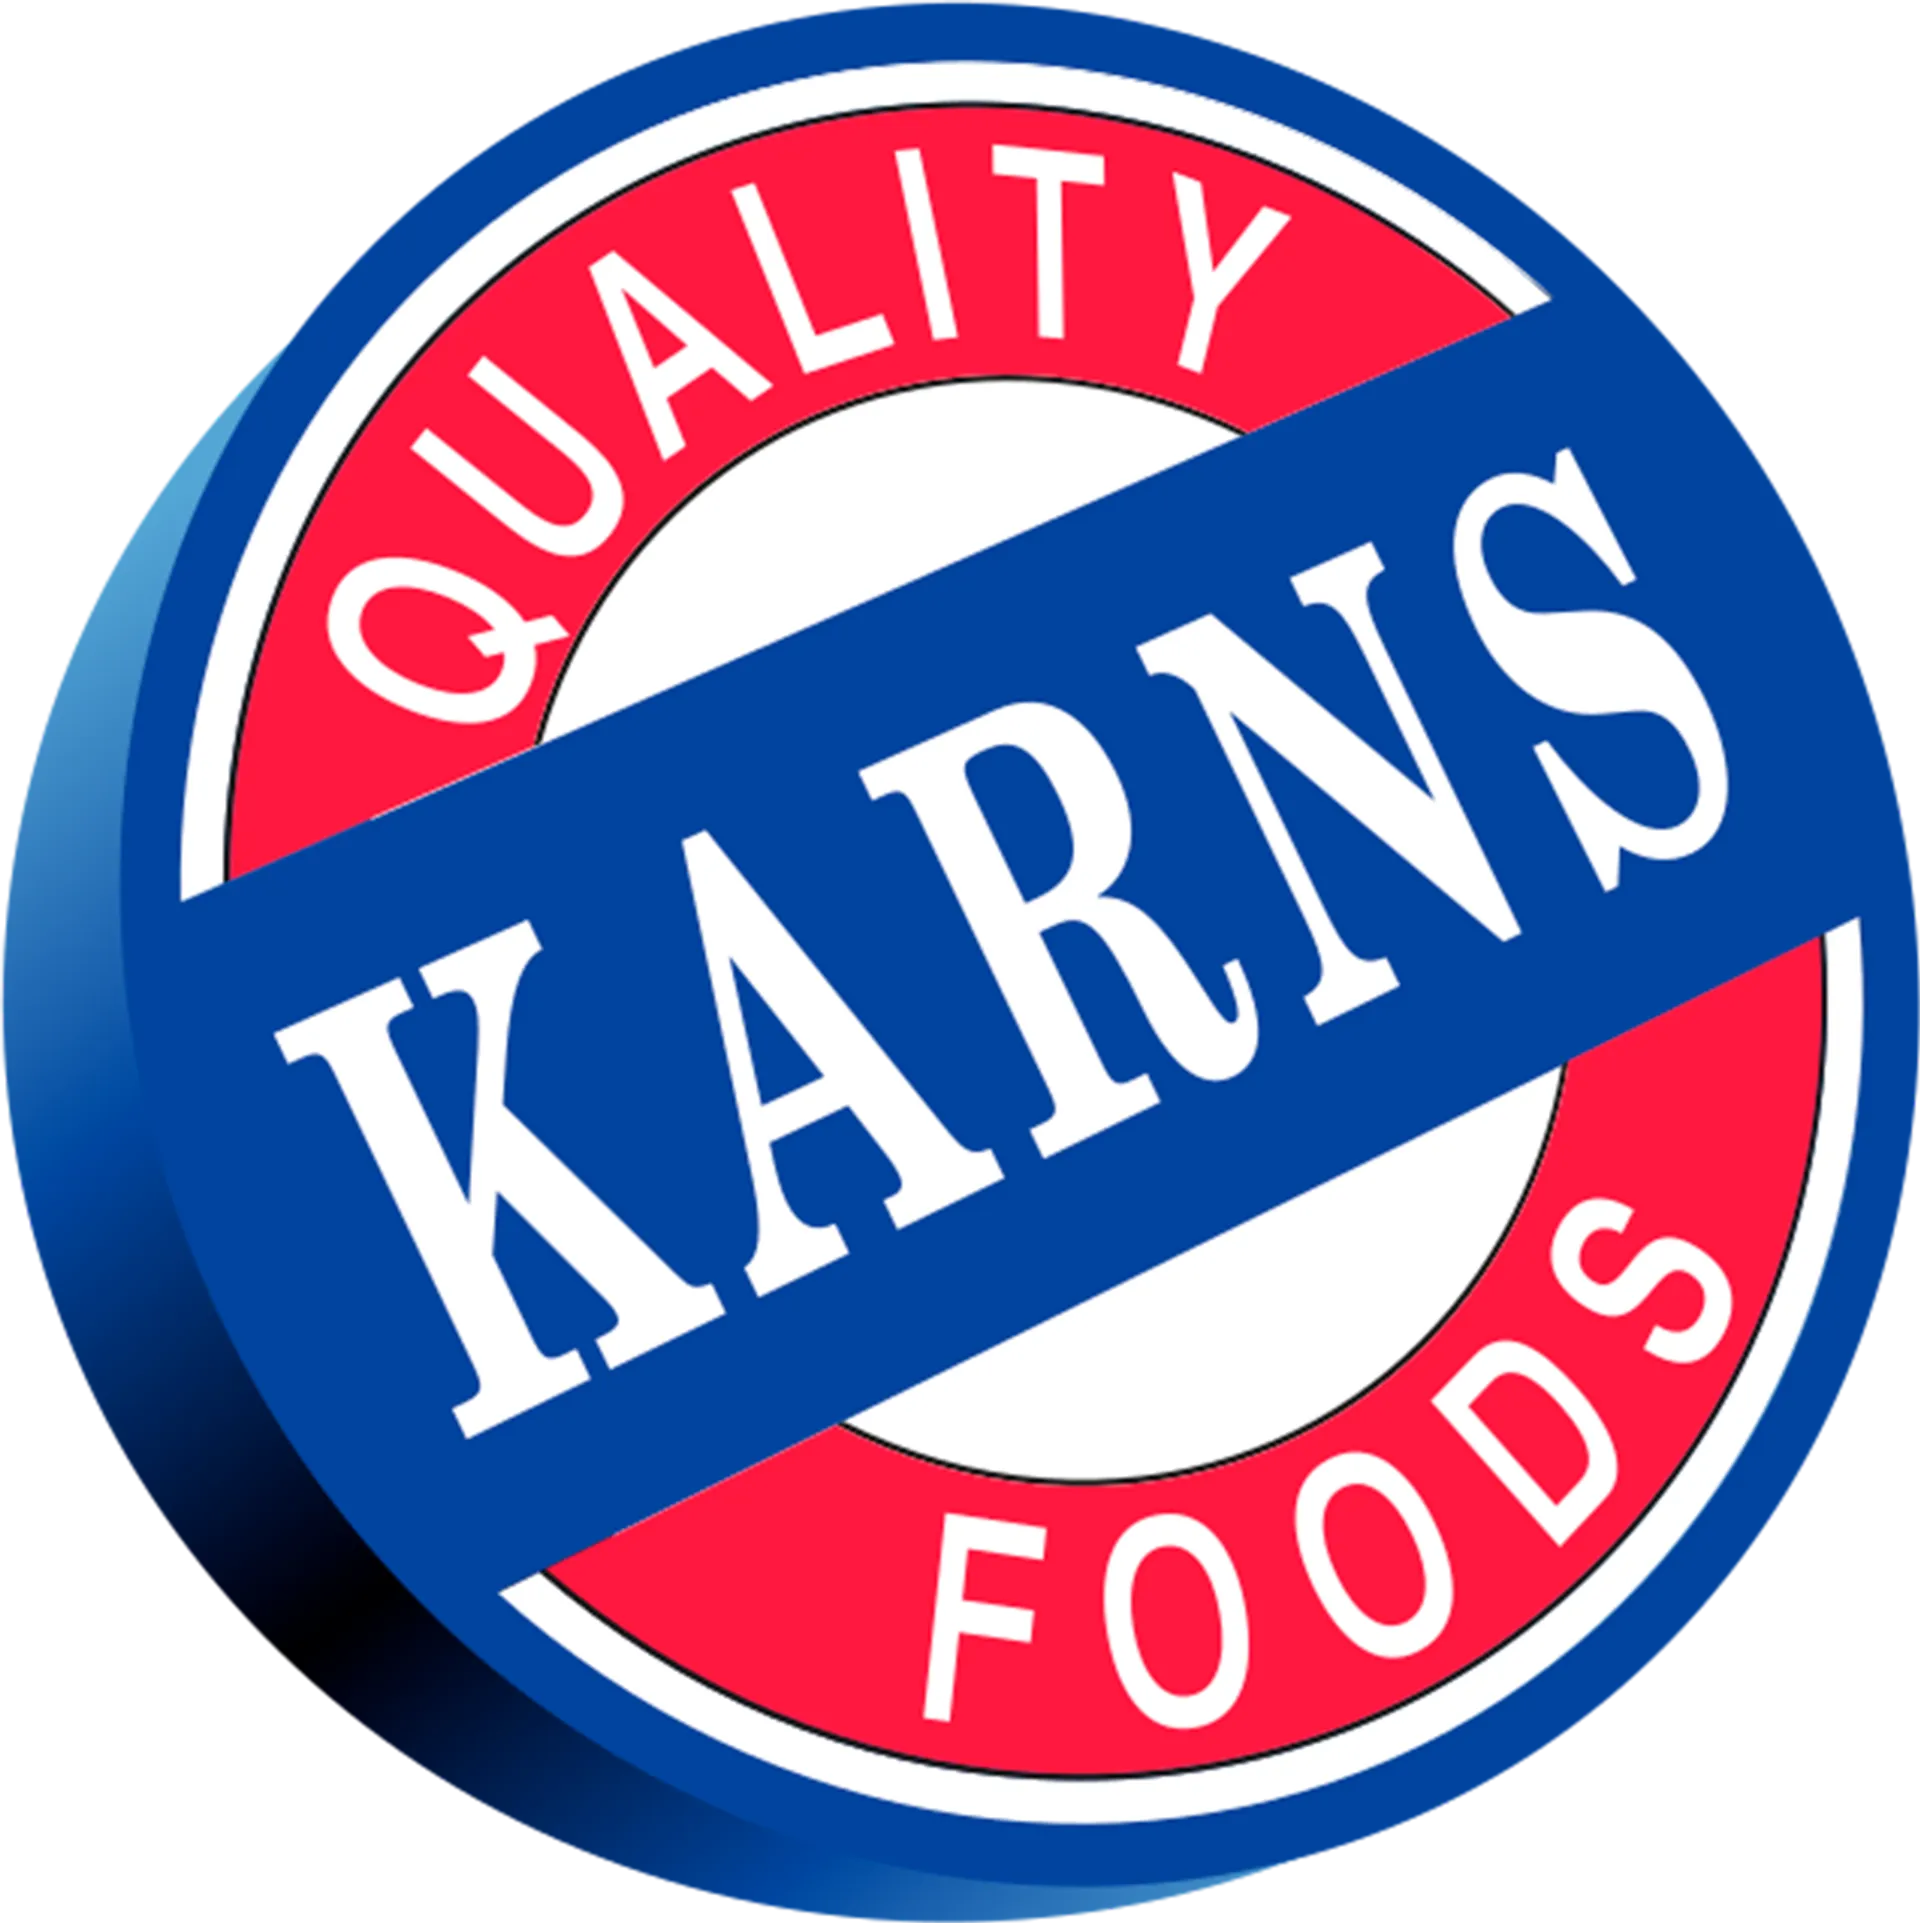 KARNS QUALITY FOODS logo de catálogo